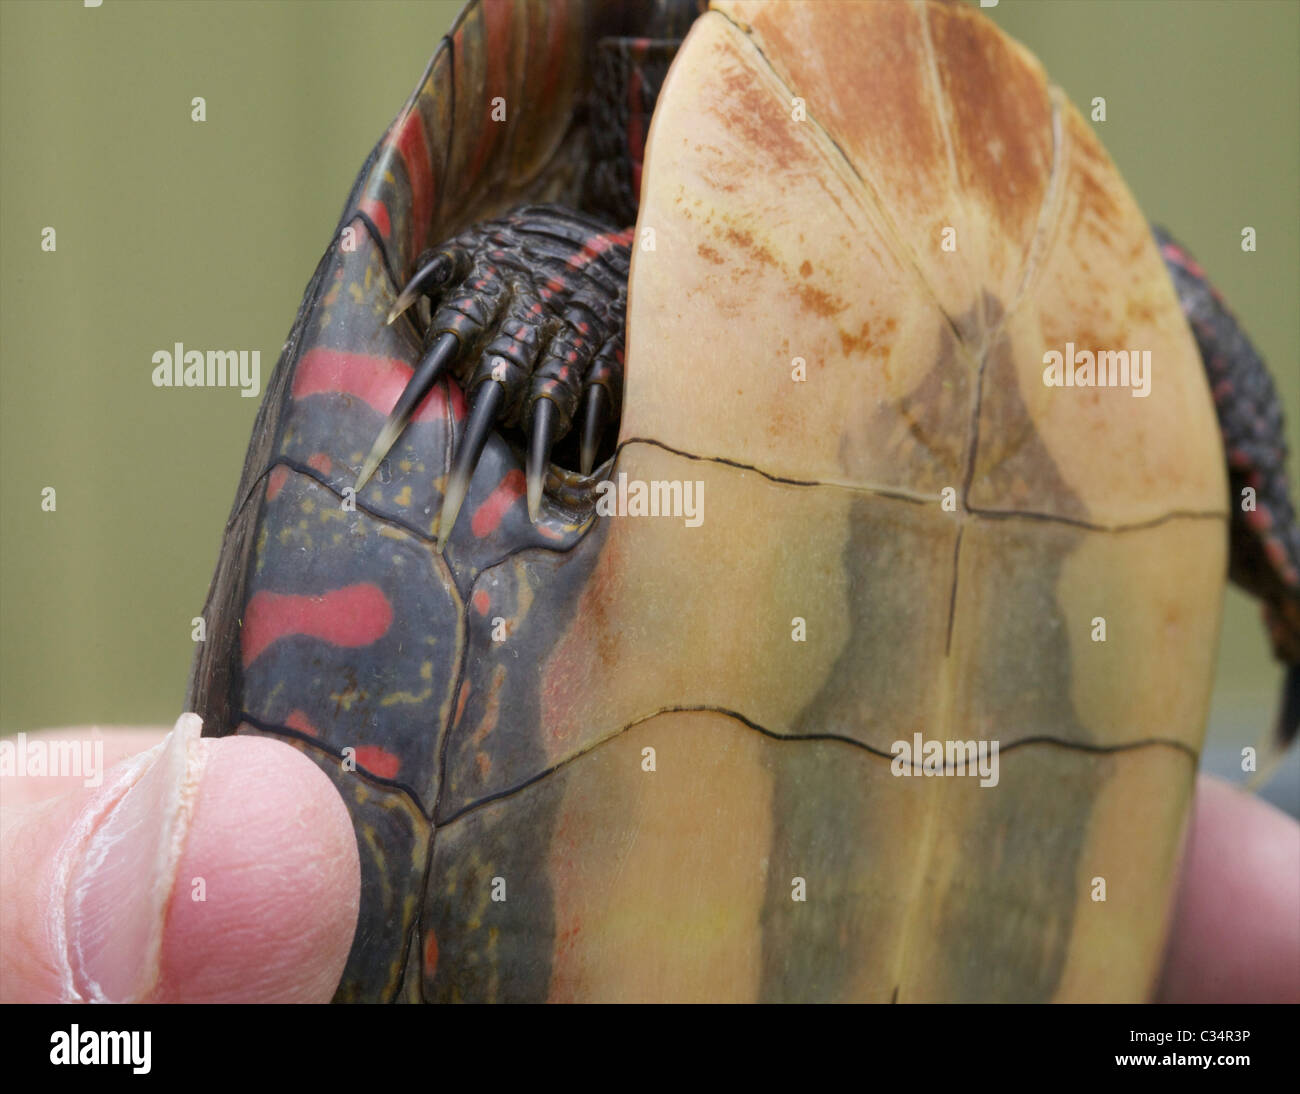 Le tartarughe maschi tendono ad avere particolarmente lunghi artigli, e queste sembrano essere utilizzati per stimolare la femmina durante l'accoppiamento. Foto Stock